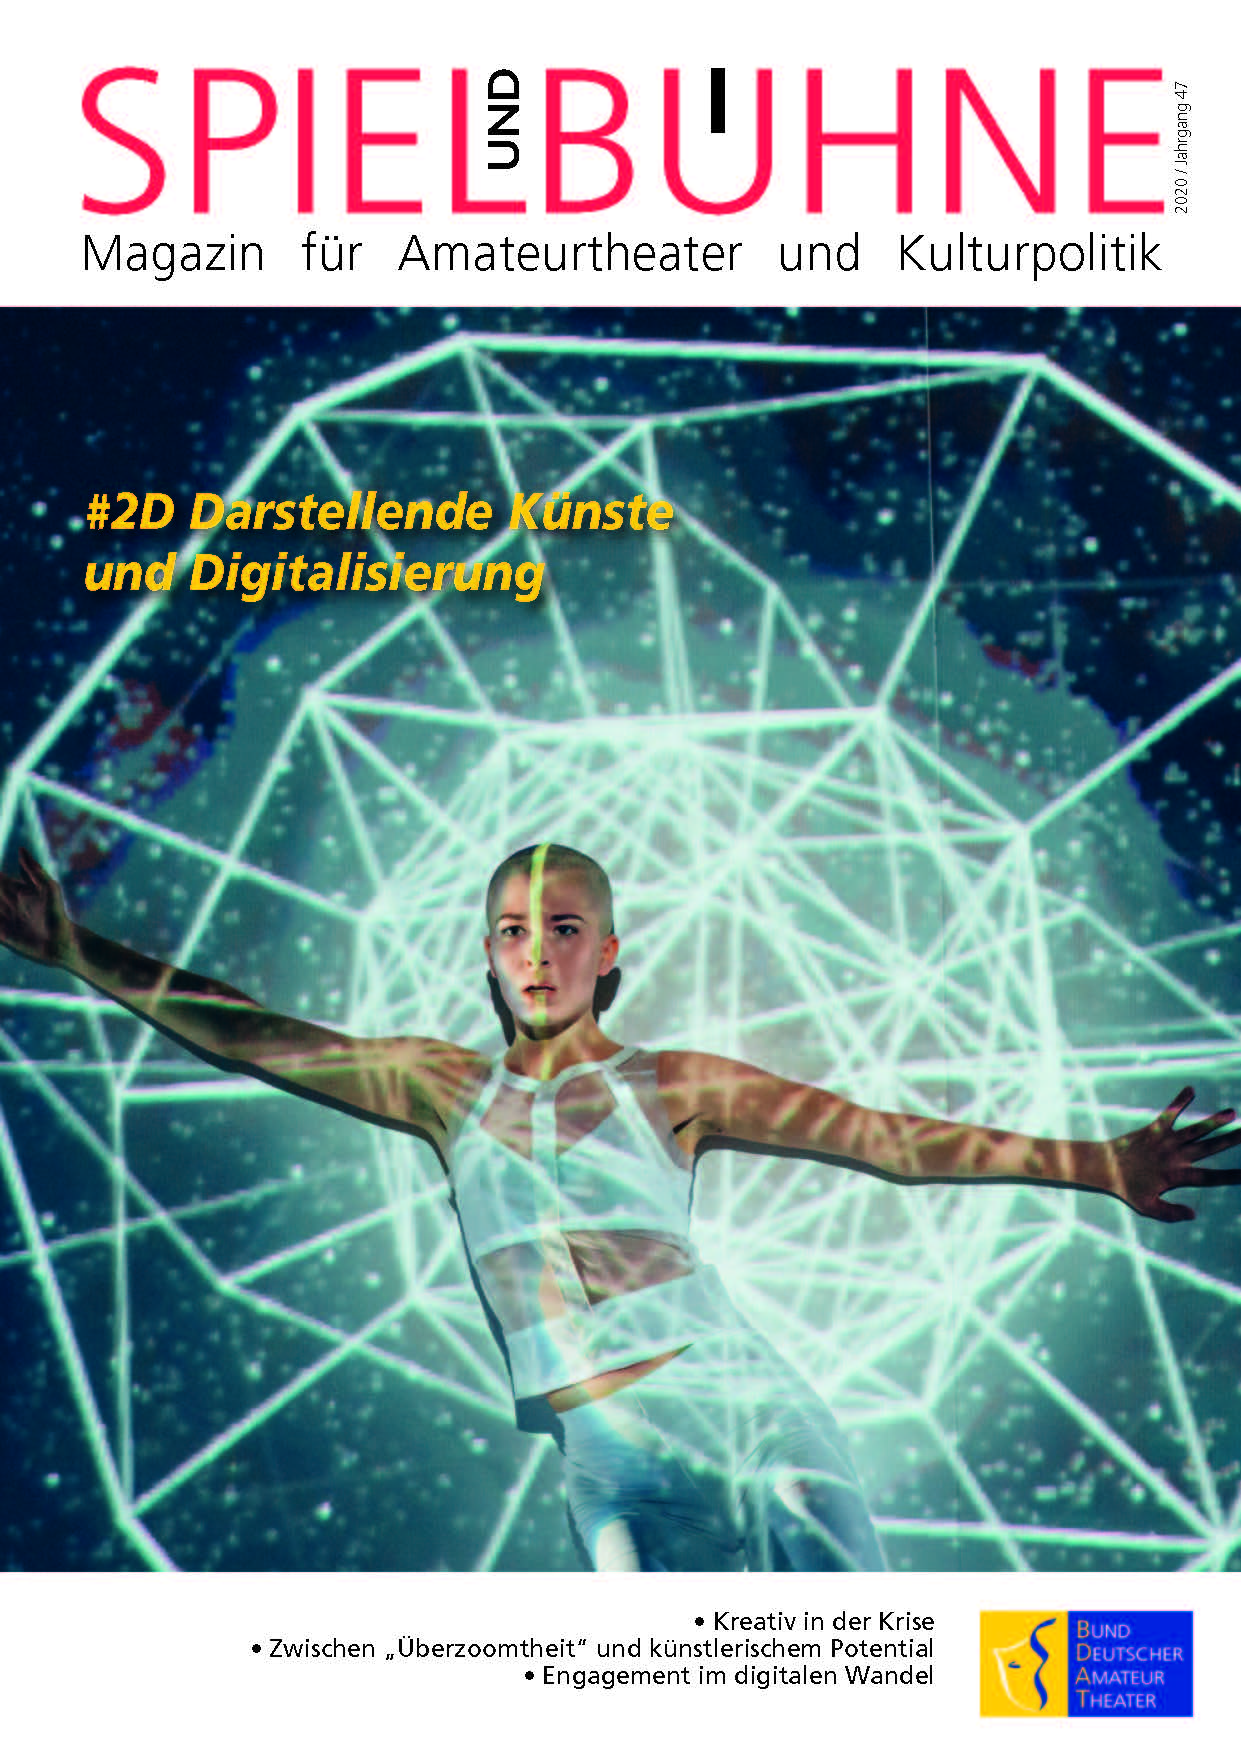 Das Cover der Zeitschrift zeigt eine junge Frau, auf die eine Netzsruktur projiziert wird. 